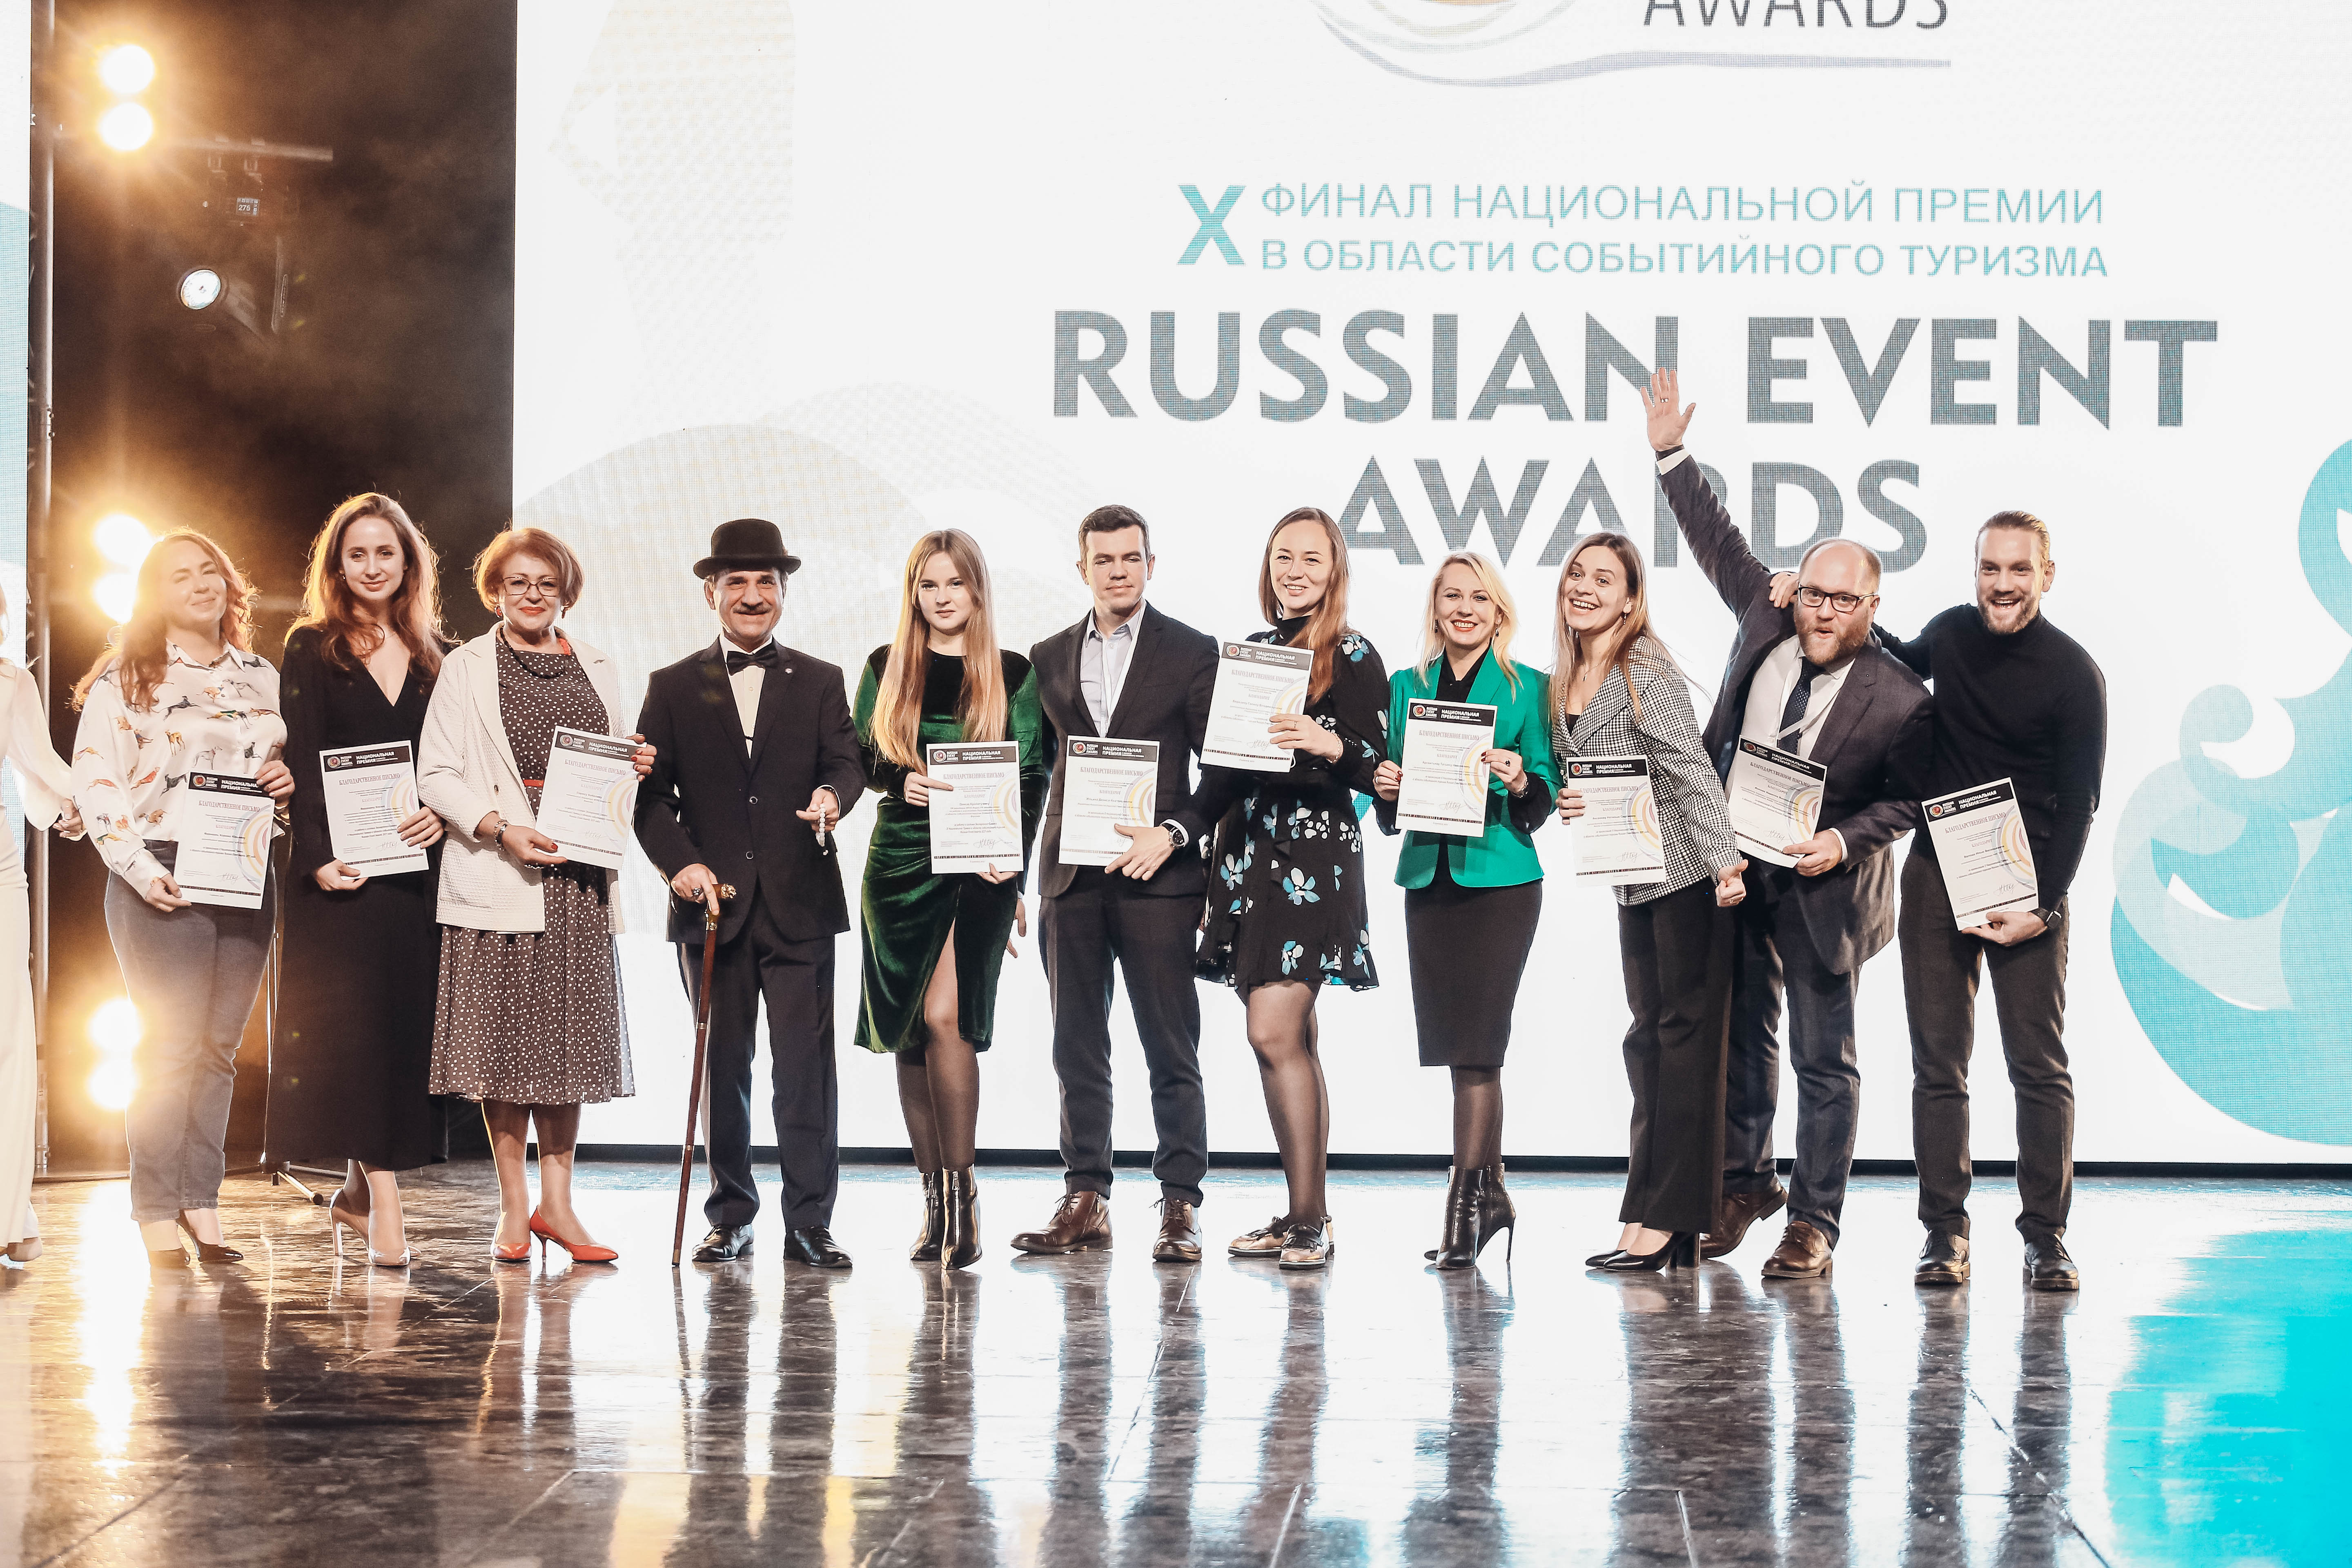 ULGOV.RU: 10 туристических проектов из Ульяновской области вошли в число победителей Х Национальной премии в сфере событийного туризма Russian Event Awards 2021